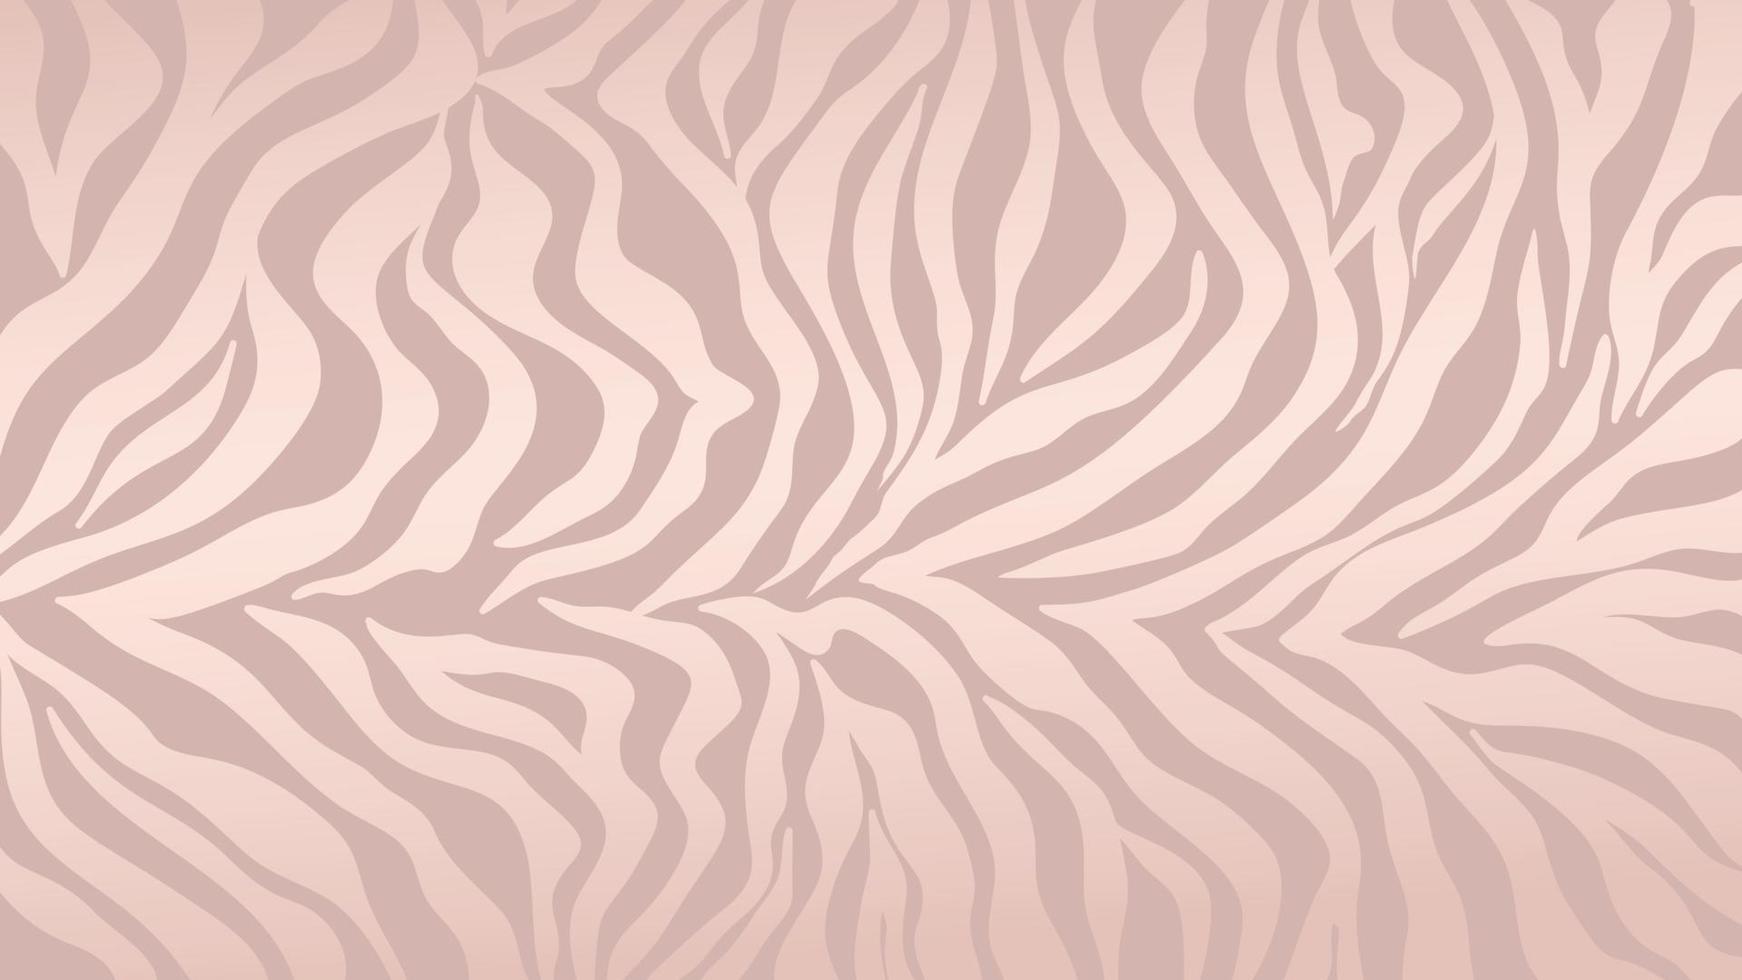 rose goud zebra huid achtergrond vector. luxe gouden textuur met folie-effect. dierlijke strepen patroon muur kunst vectorillustratie. vector